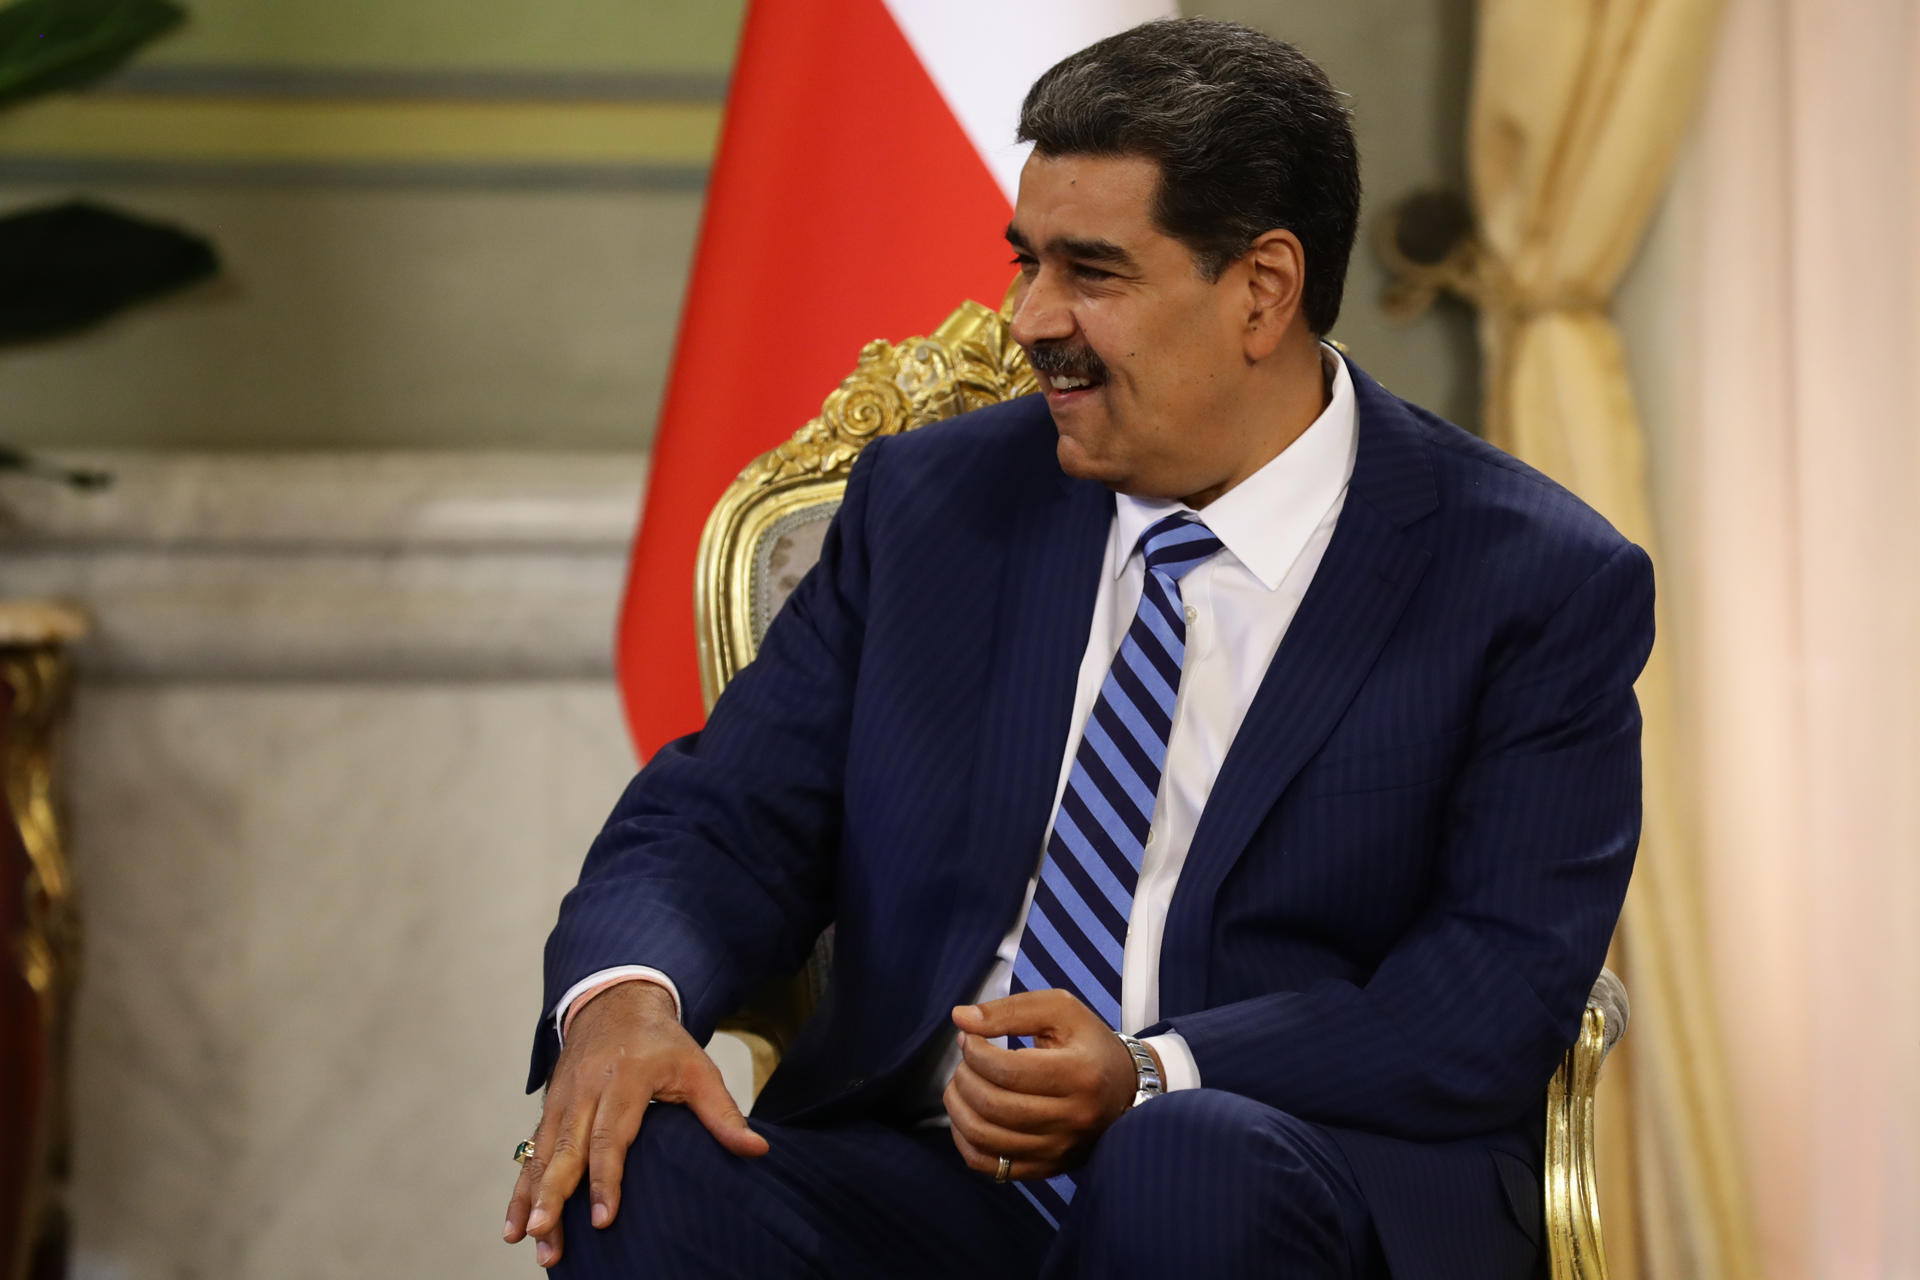 EE.UU. ha cometido las "peores injusticias" con la doctrina Monroe, aseguró Nicolás Maduro